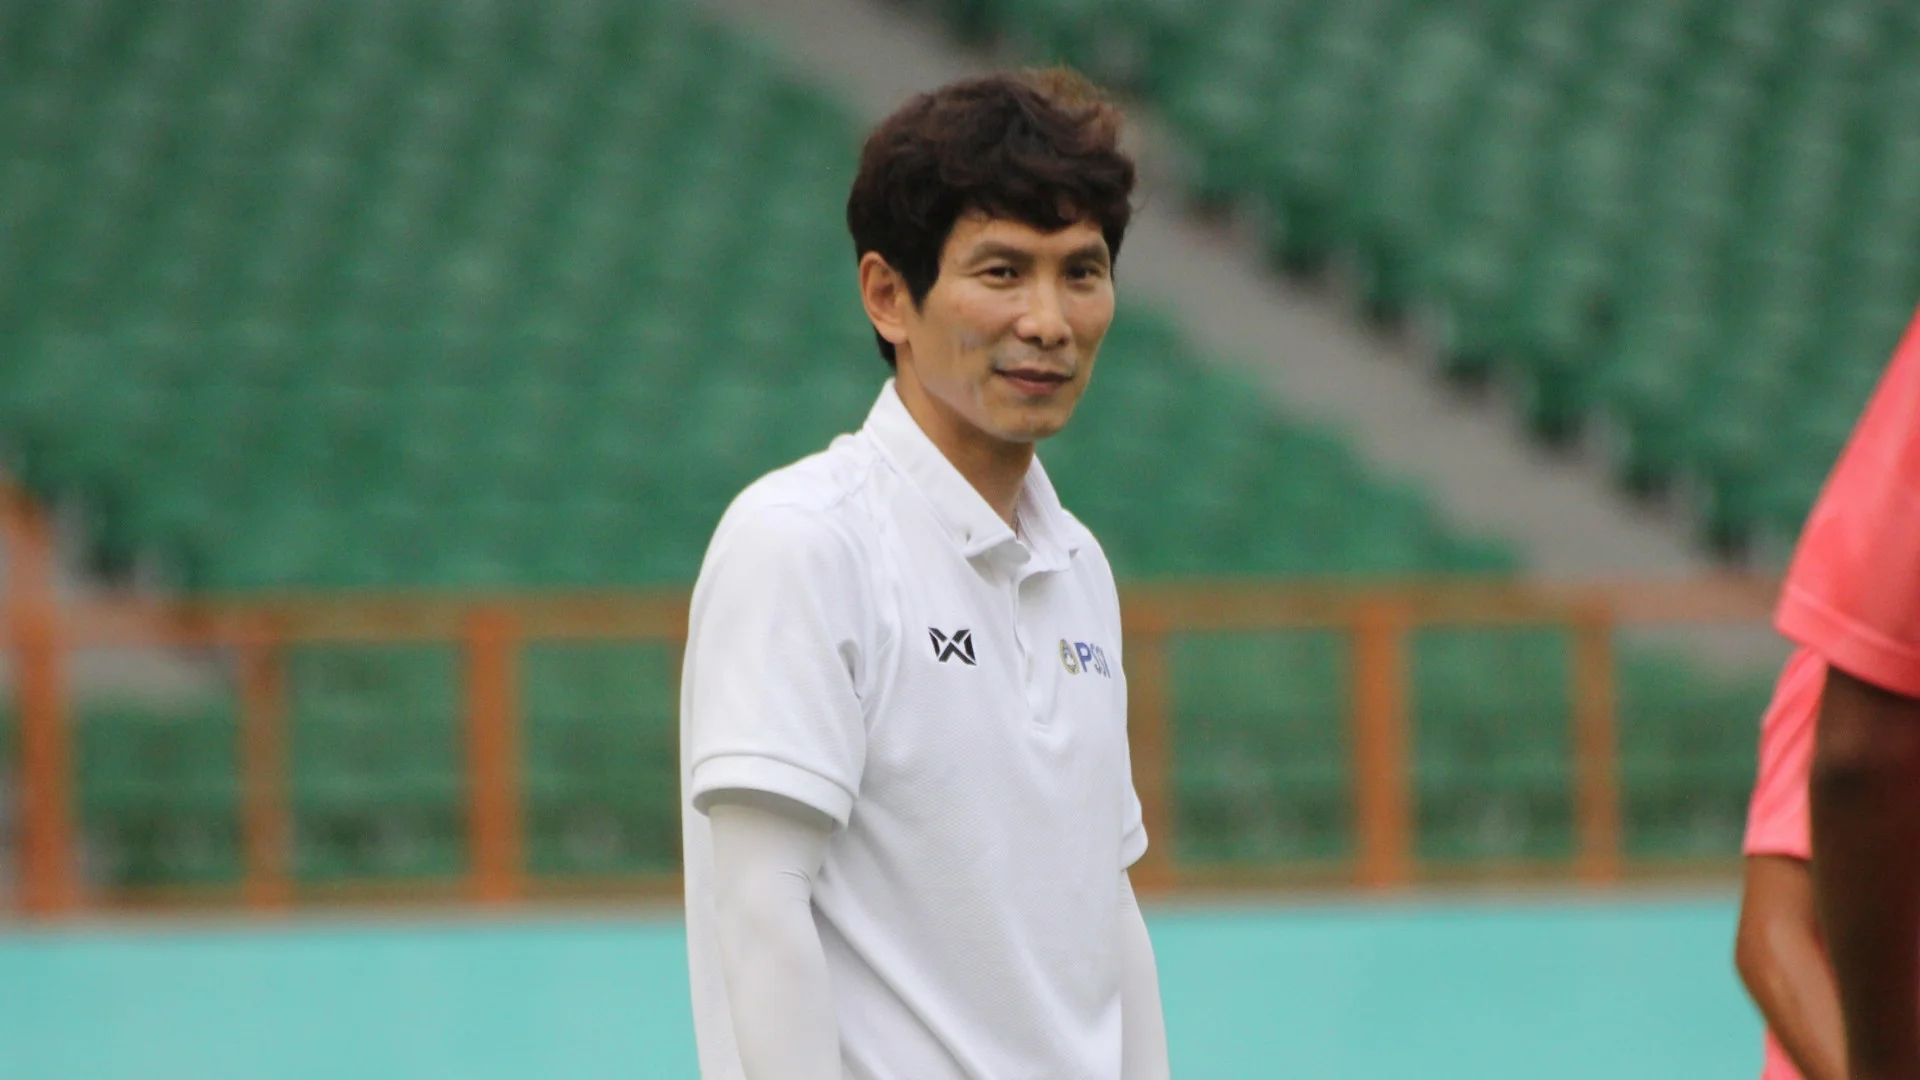 Chọn xong người kế nhiệm, thầy Park làm điều đặc biệt với U23 Việt Nam - Ảnh 1.